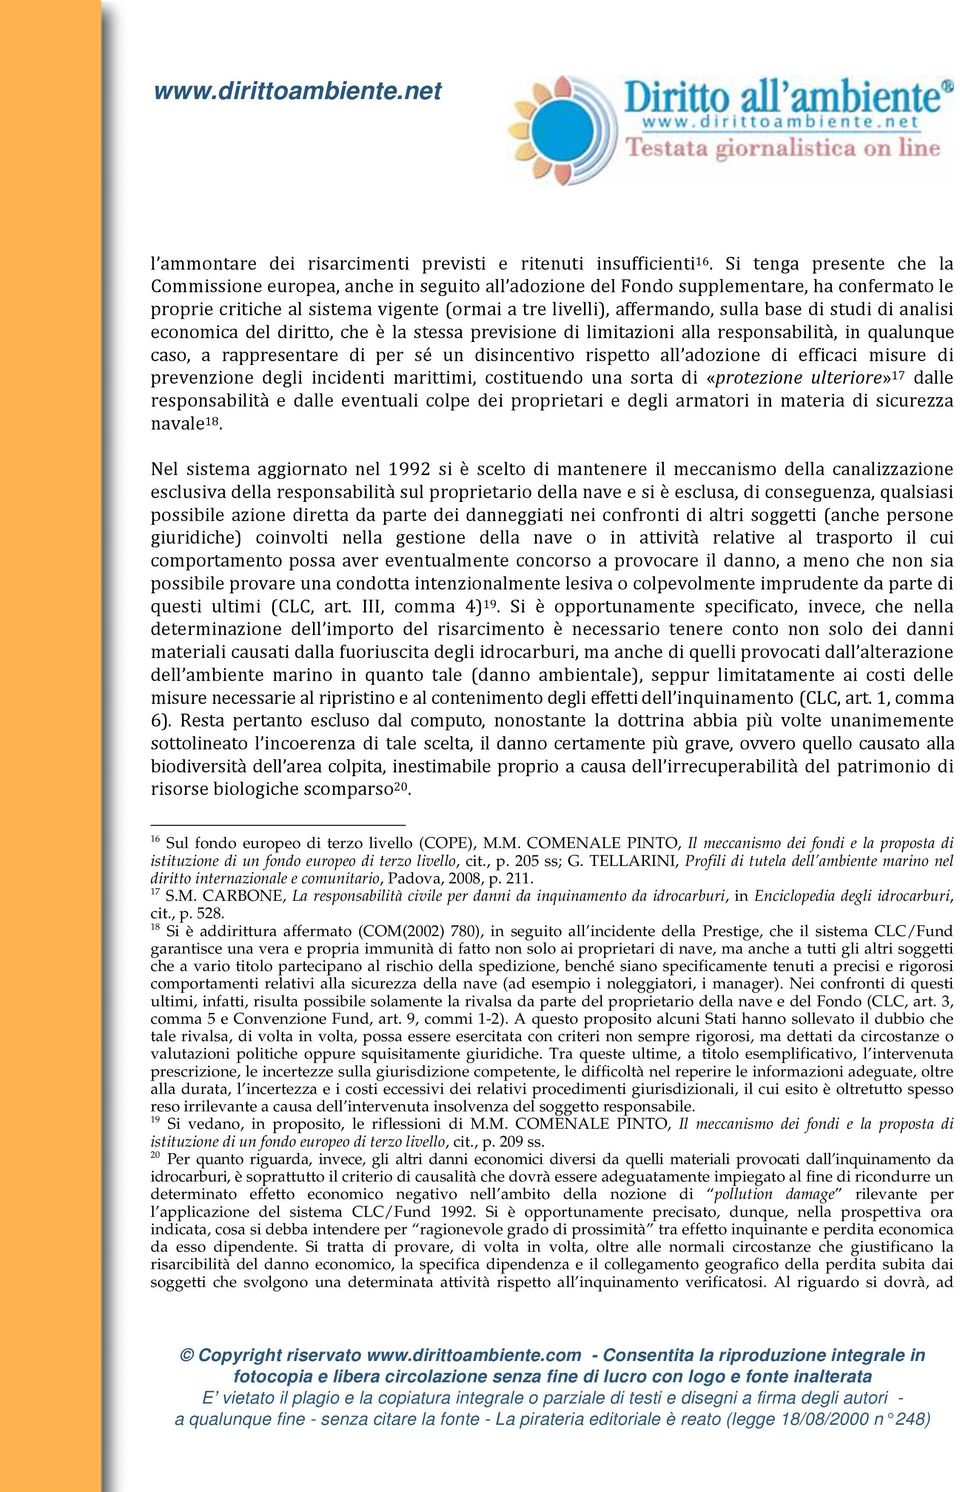 CARBONE, La responsabilità civile per danni da inquinamento da idrocarburi, in Enciclopedia degli idrocarburi, cit., p. 528.